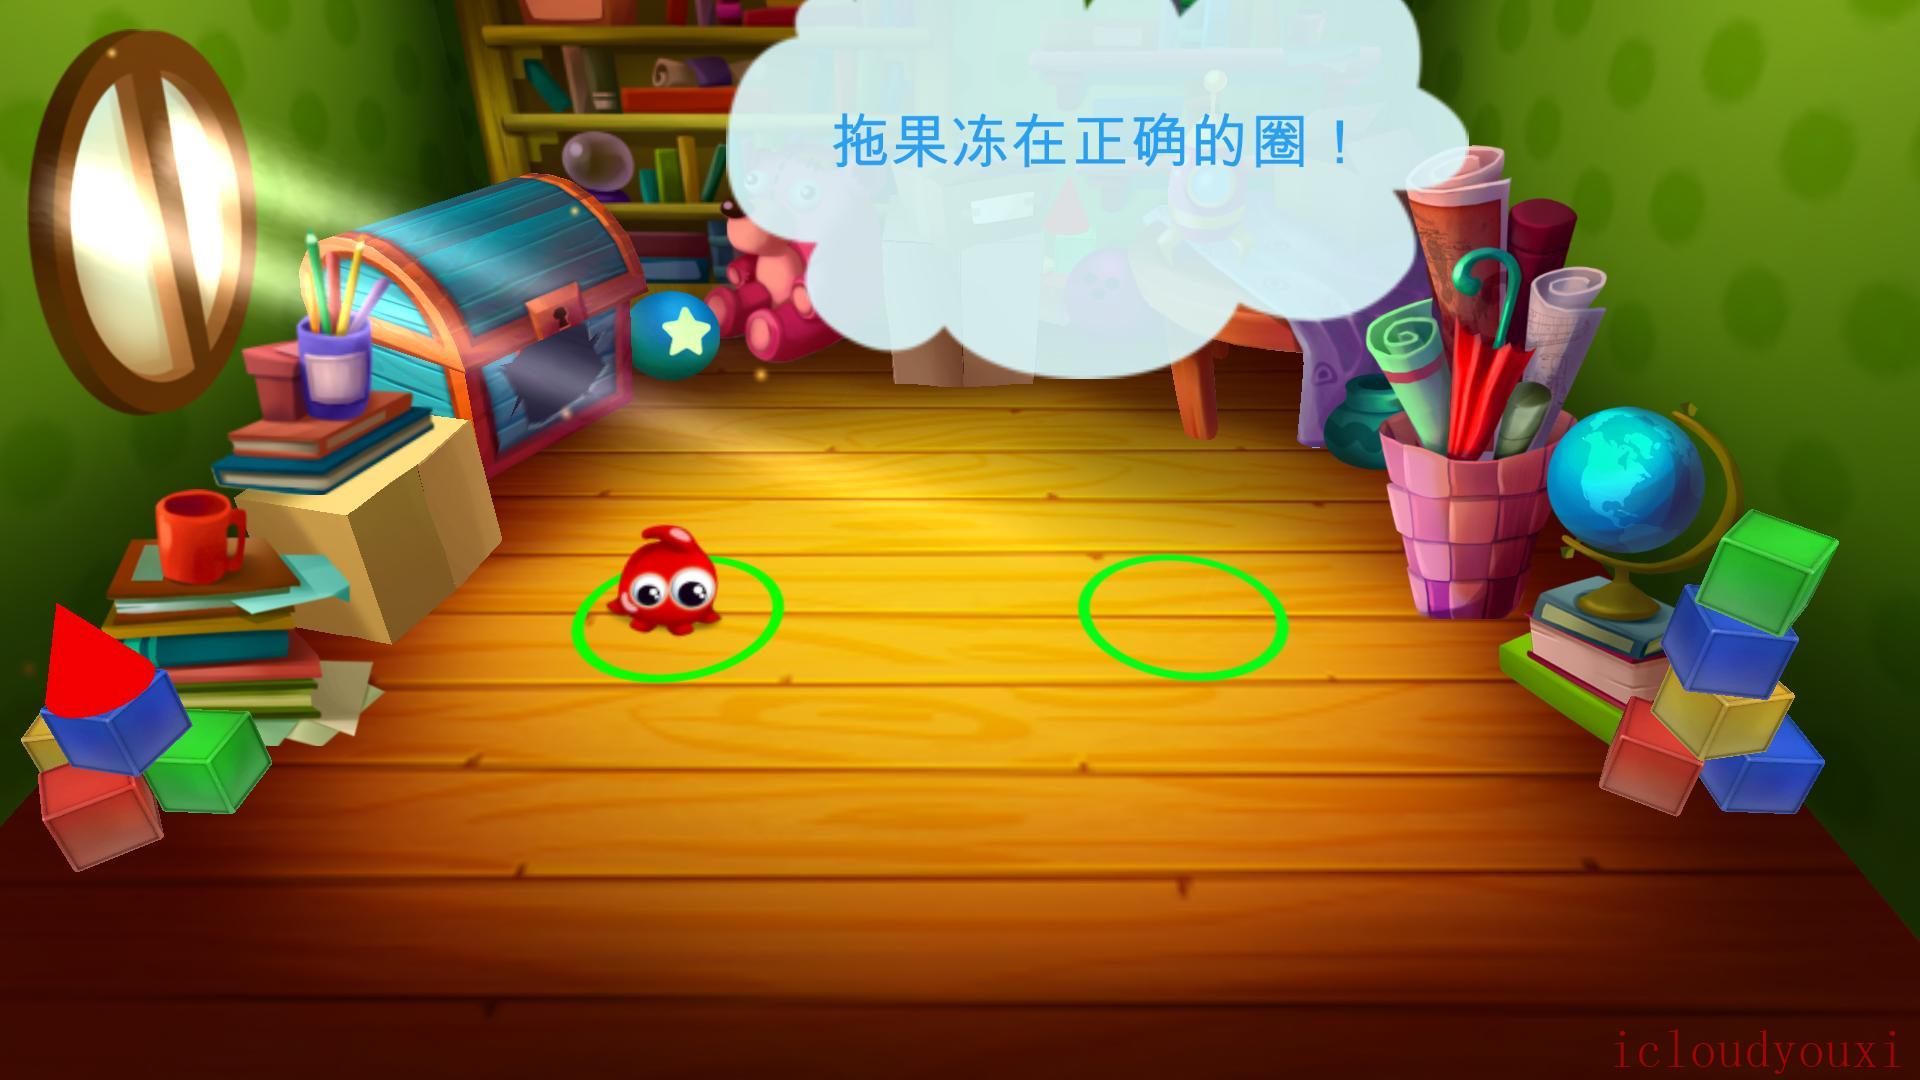 糖果大盗：小矮人的故事简体中文云游戏截图2